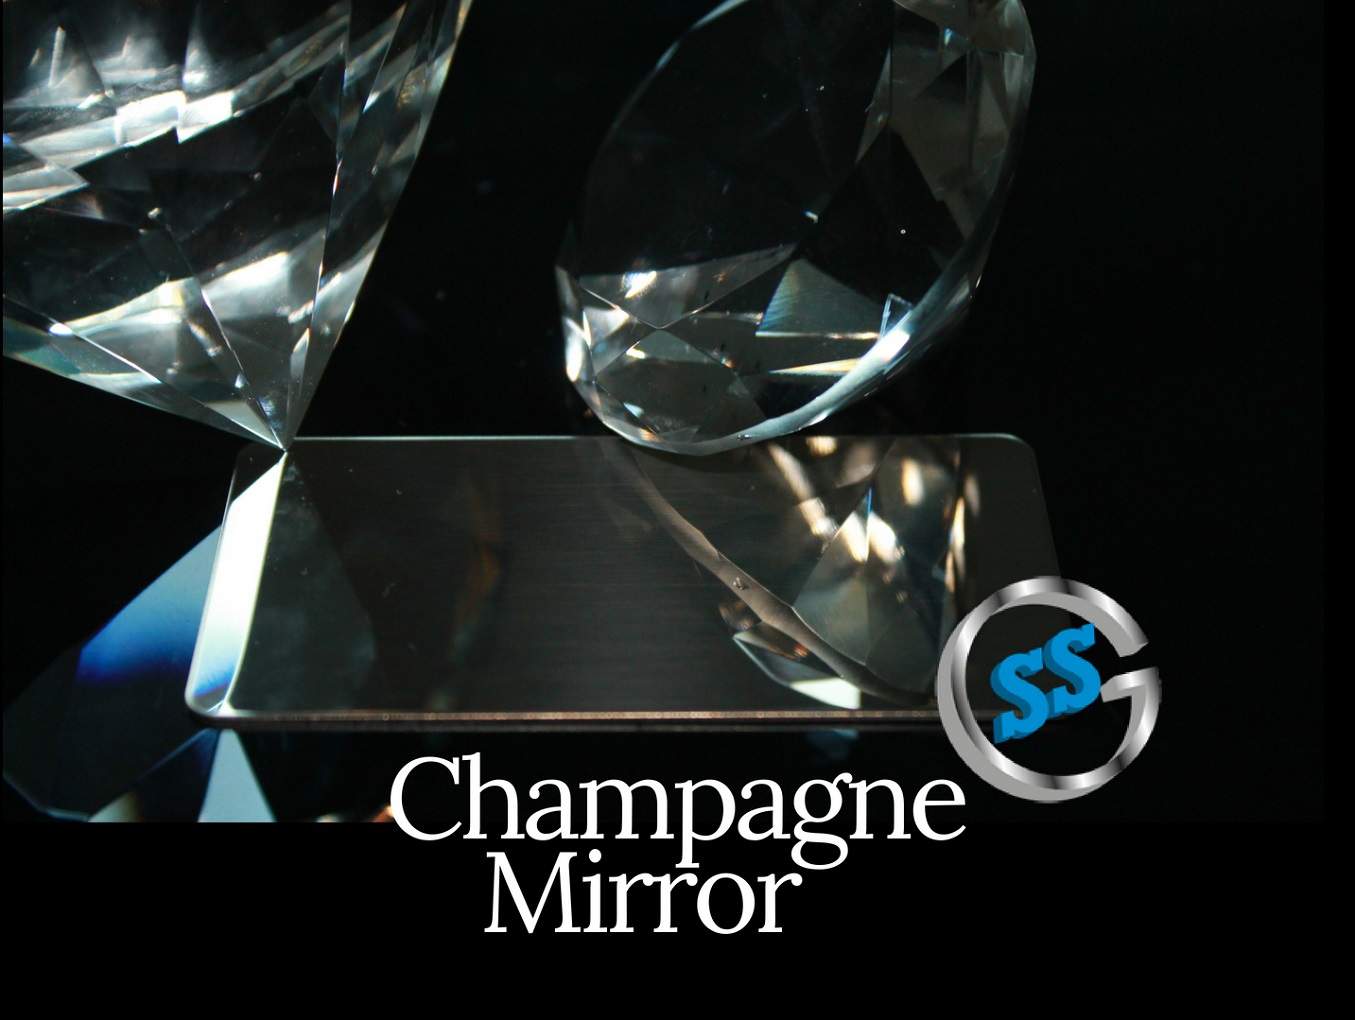 Inox colorato galvanico ColourTex Champagne Mirror, inox elettro-colorato champagne mirror, inox colorato champagne a specchio